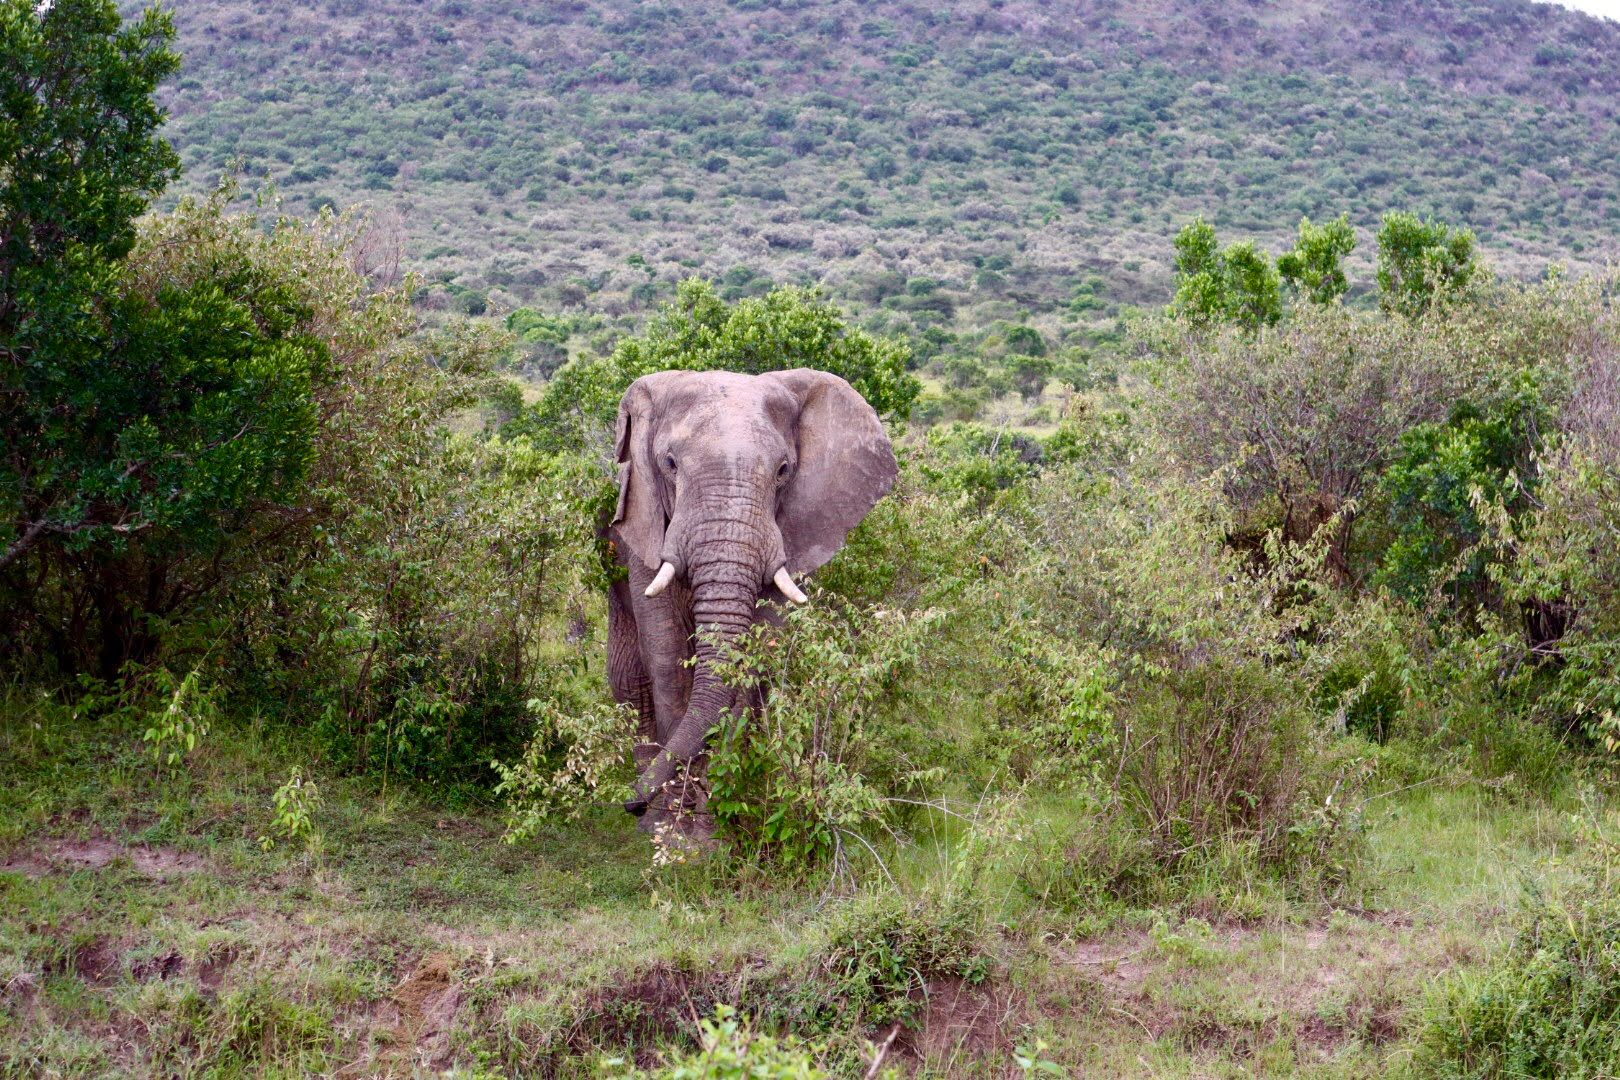 Elephant walking through brush in Kenya